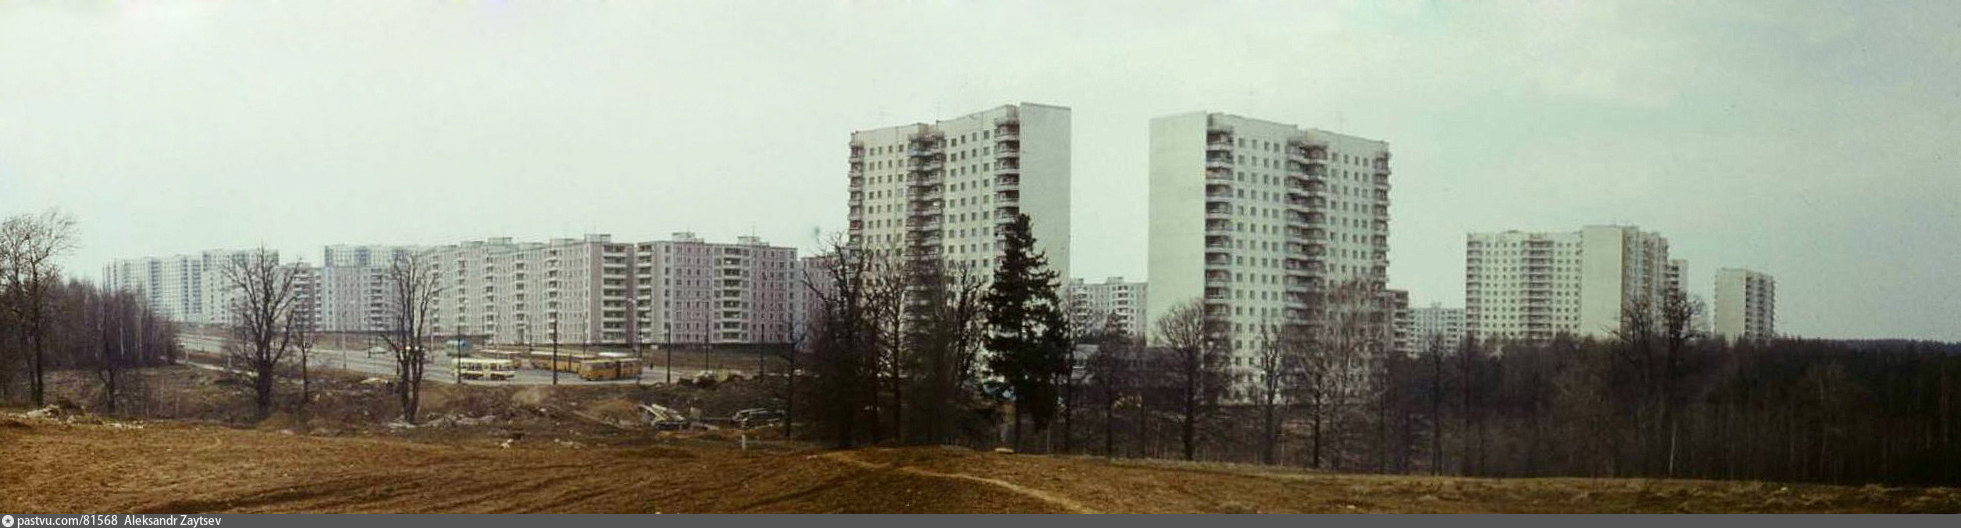 Работа в ясенево москва. Старое Ясенево. Проект Ясенево 1975. Район Ясенево в 1970 году. Ясенево (район Москвы).